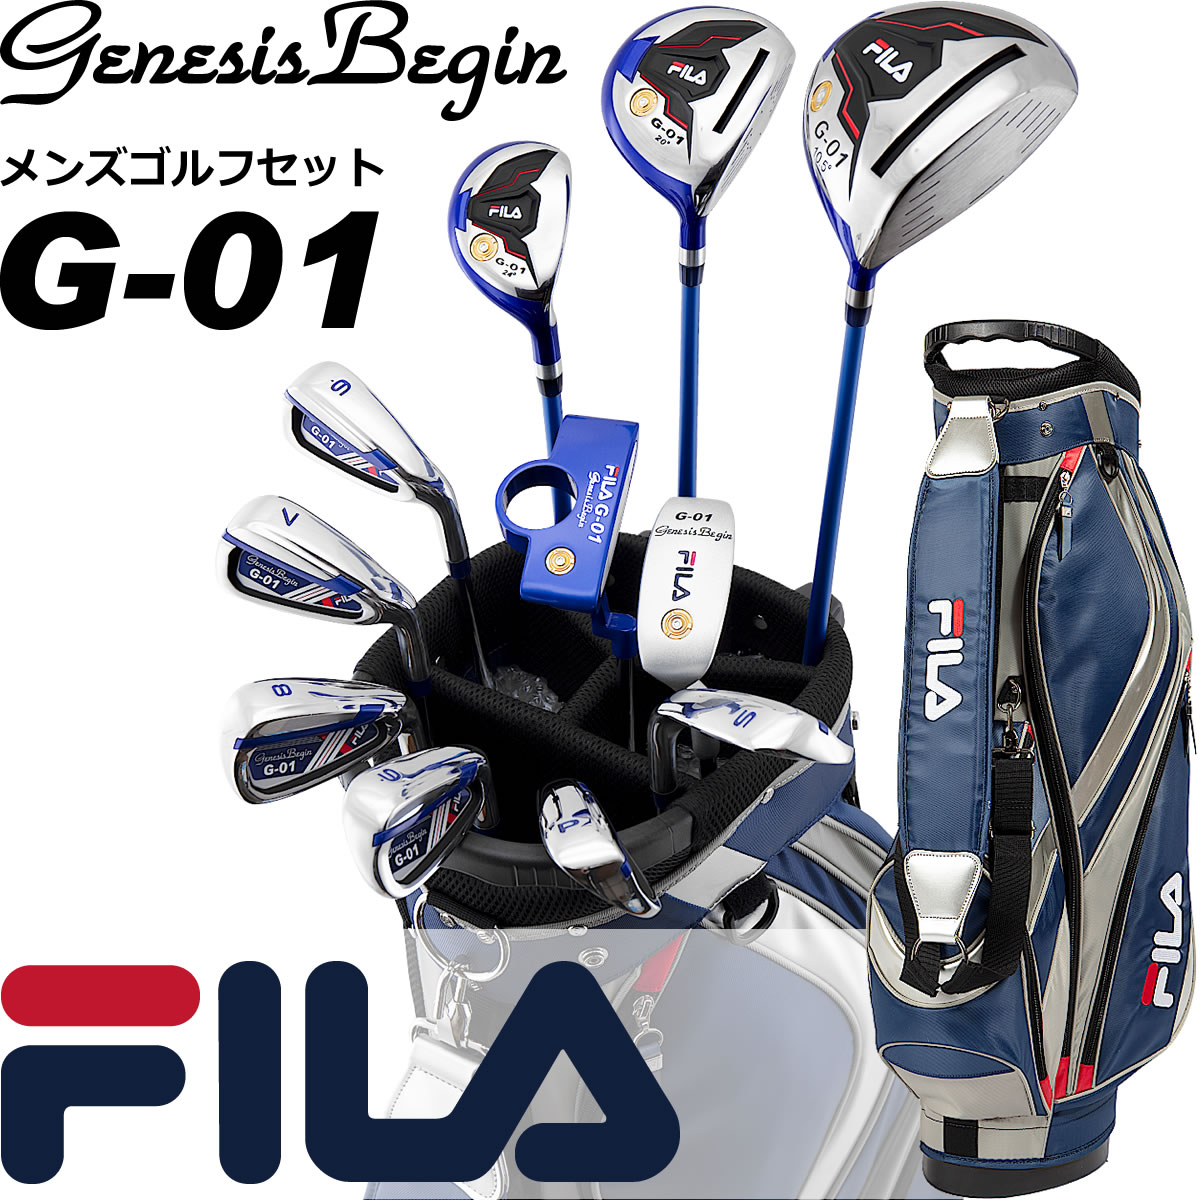 ■ FILA GOLF メンズ ゴルフクラブ14点セット FL-G01-TF FILAゴルフから発売されたG−01は、これからゴルフを始めようという方にピッタリの商品です。 ドライバーからパターまで基本となるクラブがバランス良く入っており、さらに初心者の方にぜひ使ってもらいたいチッパーが標準で入ってます。ドライバーのティーショットからグリーン周りのアプローチまで優しいクラブセッティングがスコアアップを最速で達成させることでしょう ■ セット内容14点（内 クラブ11本） ・ドライバー ・FW＃3 ・UT 24° ・アイアン6本（＃6〜＃9、PW、SW） ・チッパー ・パター ・ヘッドカバー（DR用、FW用） ・専用スタンド式キャディバッグ フルセット　メンズセット　人気　フェアウェイウッド　ユーティリティ　オススメ　男性用　カーボン　シャフト　番手　ワールドゴルフ　右利き　右　成人式　入学式 3,980円(税込)以上のお買い物で送料無料　沖縄は9,800円以上で送料無料 ※「送料無料」の条件については、下の表にてご確認くださいませ。特に大型宅配便（大型サイズ商品）のお客様は必ずご確認をお願いします。 ※ 楽天市場の仕様により、現在全ての地域で「送料無料」と表示されていますが北海道、沖縄への配送につきましては別途送料をいただく場合がございます。ご注文の際、ご注意いただきますよう何卒宜しくお願い申し上げます。 楽天国際（海外）配送 対象商品 [ Rakuten International Shipping Item ]の詳細はこちらです。[ Details click here ] オススメの商品や特集コーナーのご案内！ ぜひお立ち寄りくださいませ。 また、その他にも「あと少しで送料無料・・・」な時や、上手にポイント獲得の「買い回り」などに、このような商品たちはいかがでしょうか♪ 〜500円 商品 501〜1,000円 商品 1,001〜2,000円 商品 2,001〜3,000円 商品 たくさんのご注文、ご感想をいただきまして誠にありがとうございます！ ご注文の前に当店の評価をぜひご覧くださいね。ご安心してお買い物をお楽しみくださいませ スグにお使いいただけるクーポンをご用意！ぜひご利用ください♪ チェックして上手にお買い物を♪ さまざまなポイントキャンペーン実施中！ メーカー希望小売価格はメーカーカタログに基づいて掲載しています ※ クリックでカタログをご確認頂けます。 類似商品はこちら人気 FILA フィラ ゴルフ 14点メンズセ70,400円～人気 FILA フィラ ゴルフ 14点レディー70,400円ゴルフ クラブセット ワールドイーグル F-040,700円～人気 FILA フィラ ゴルフ 軽量・頑丈 セ7,150円～FILA フィラ ゴルフ 清潔感溢れるスポーテ70,400円ゴルフ クラブセット ワールドイーグル F-047,300円～人気 FILA フィラ ゴルフ カジュアルクラ5,995円～ゴルフ クラブセット ワールドイーグル F-033,000円～ワールドイーグル 5Z-BLACK メンズゴル40,700円～新着商品はこちら2024/5/18ゼクシオ 13 フェアウェイウッド 右用 #954,450円2024/5/18ゼクシオ 13 フェアウェイウッド 右用 #754,450円～2024/5/18ゼクシオ 13 フェアウェイウッド 左用 #454,450円～2024/05/19 更新 ■ FILA GOLF メンズ ゴルフクラブ14点セット FL-G01-TF FILAゴルフから発売されたG−01は、これからゴルフを始めようという方にピッタリの商品です。 ドライバーからパターまで基本となるクラブがバランス良く入っており、さらに初心者の方にぜひ使ってもらいたいチッパーが標準で入ってます。ドライバーのティーショットからグリーン周りのアプローチまで優しいクラブセッティングがスコアアップを最速で達成させることでしょう ■ セット内容14点（内 クラブ11本） ・ドライバー ・FW＃3 ・UT 24° ・アイアン6本（＃6〜＃9、PW、SW） ・チッパー ・パター ・ヘッドカバー（DR用、FW用） ・専用スタンド式キャディバッグ 類似商品はこちら人気 FILA フィラ ゴルフ 14点メンズセ70,400円～人気 FILA フィラ ゴルフ 14点レディー70,400円ゴルフ クラブセット ワールドイーグル F-040,700円～